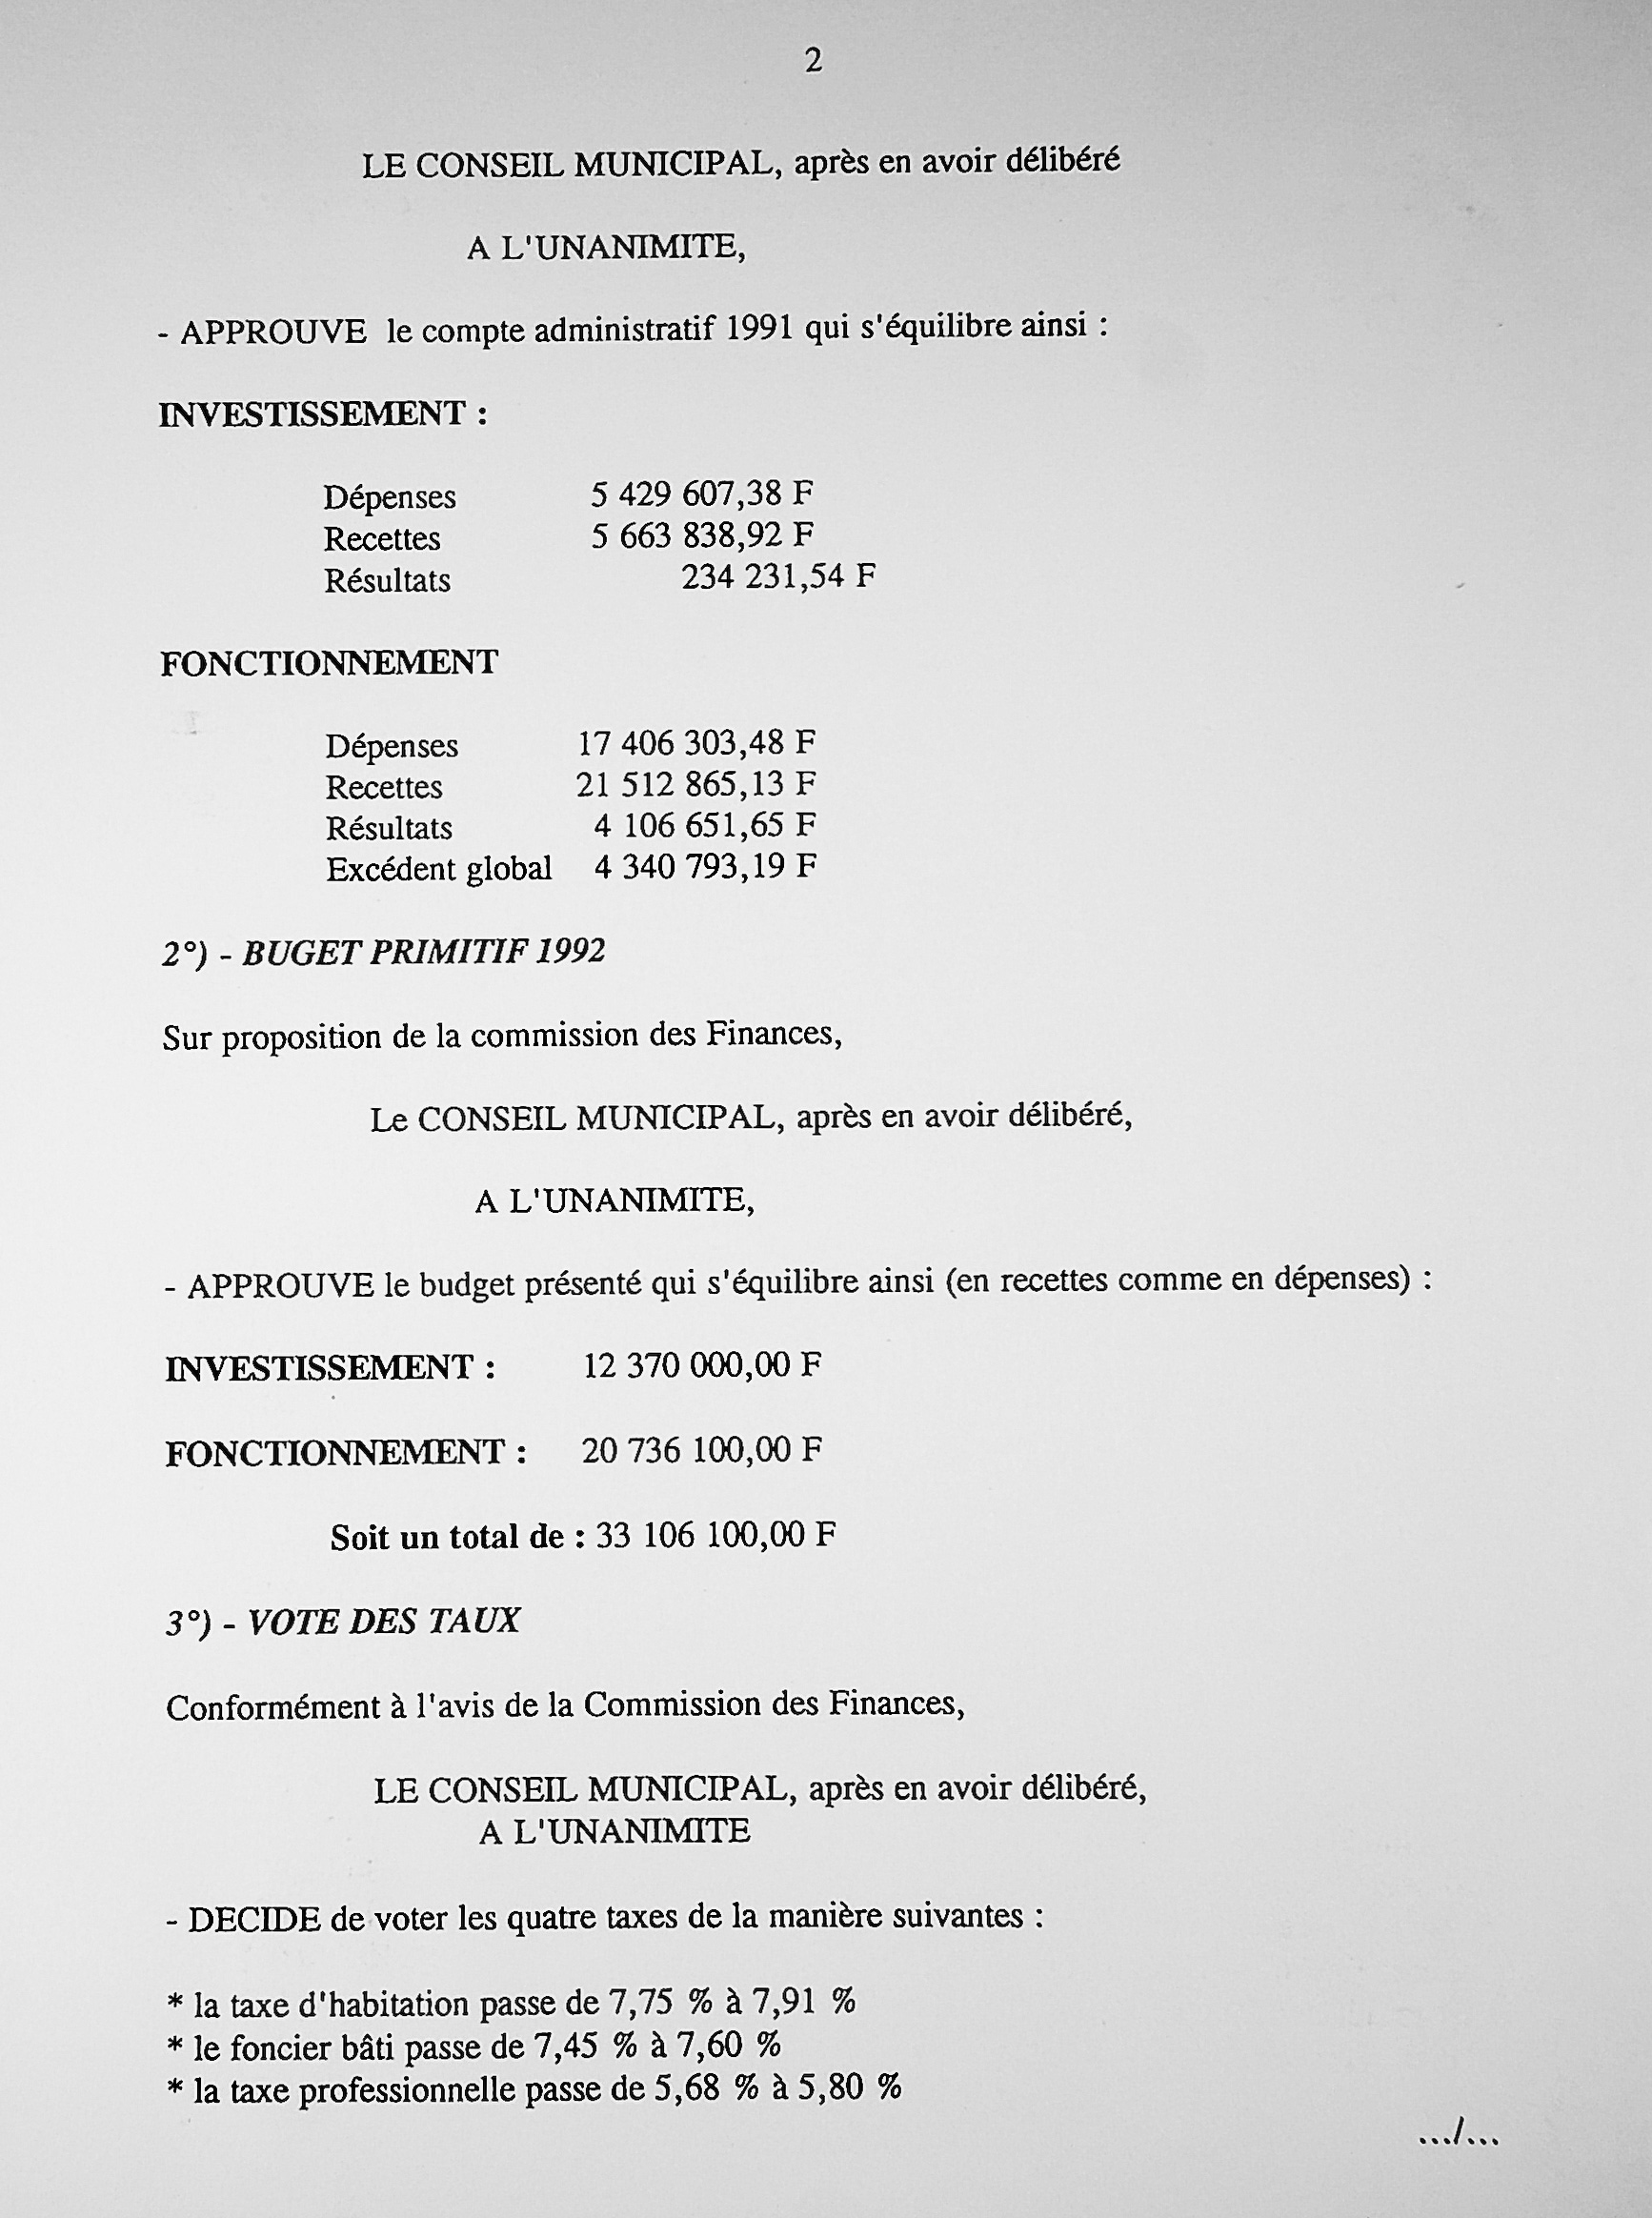 Feuillet_084B-1989-1992.jpg